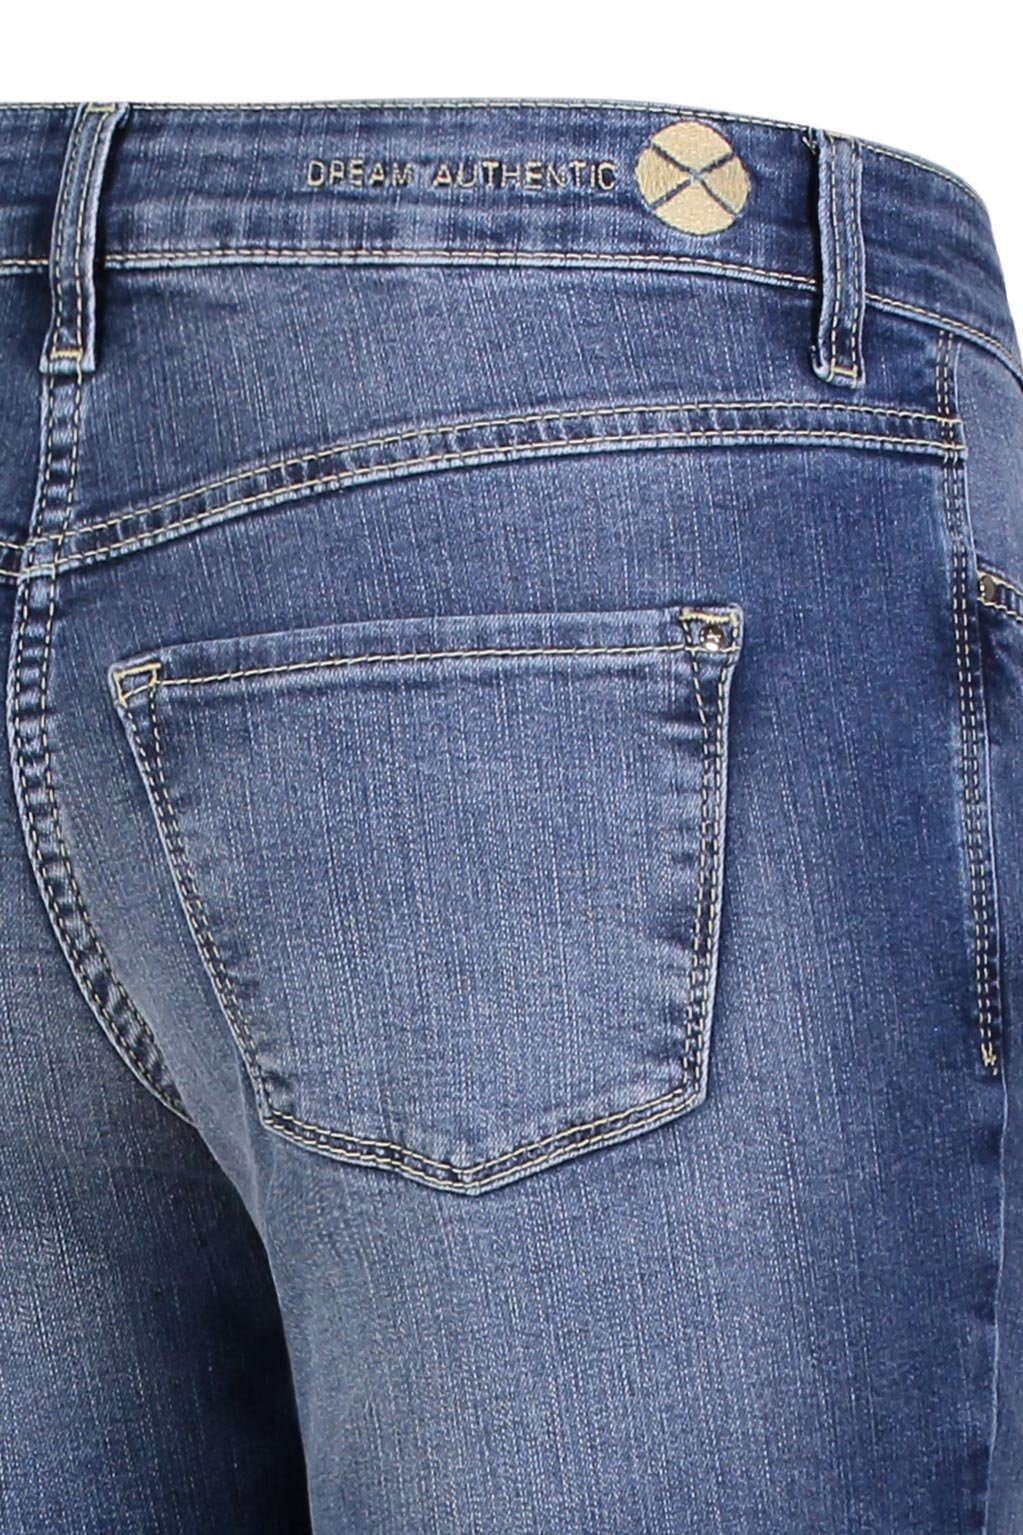 MAC Stretch-Jeans MAC DREAM D432 wash blue SKINNY authentic 5457-90-0356L summer